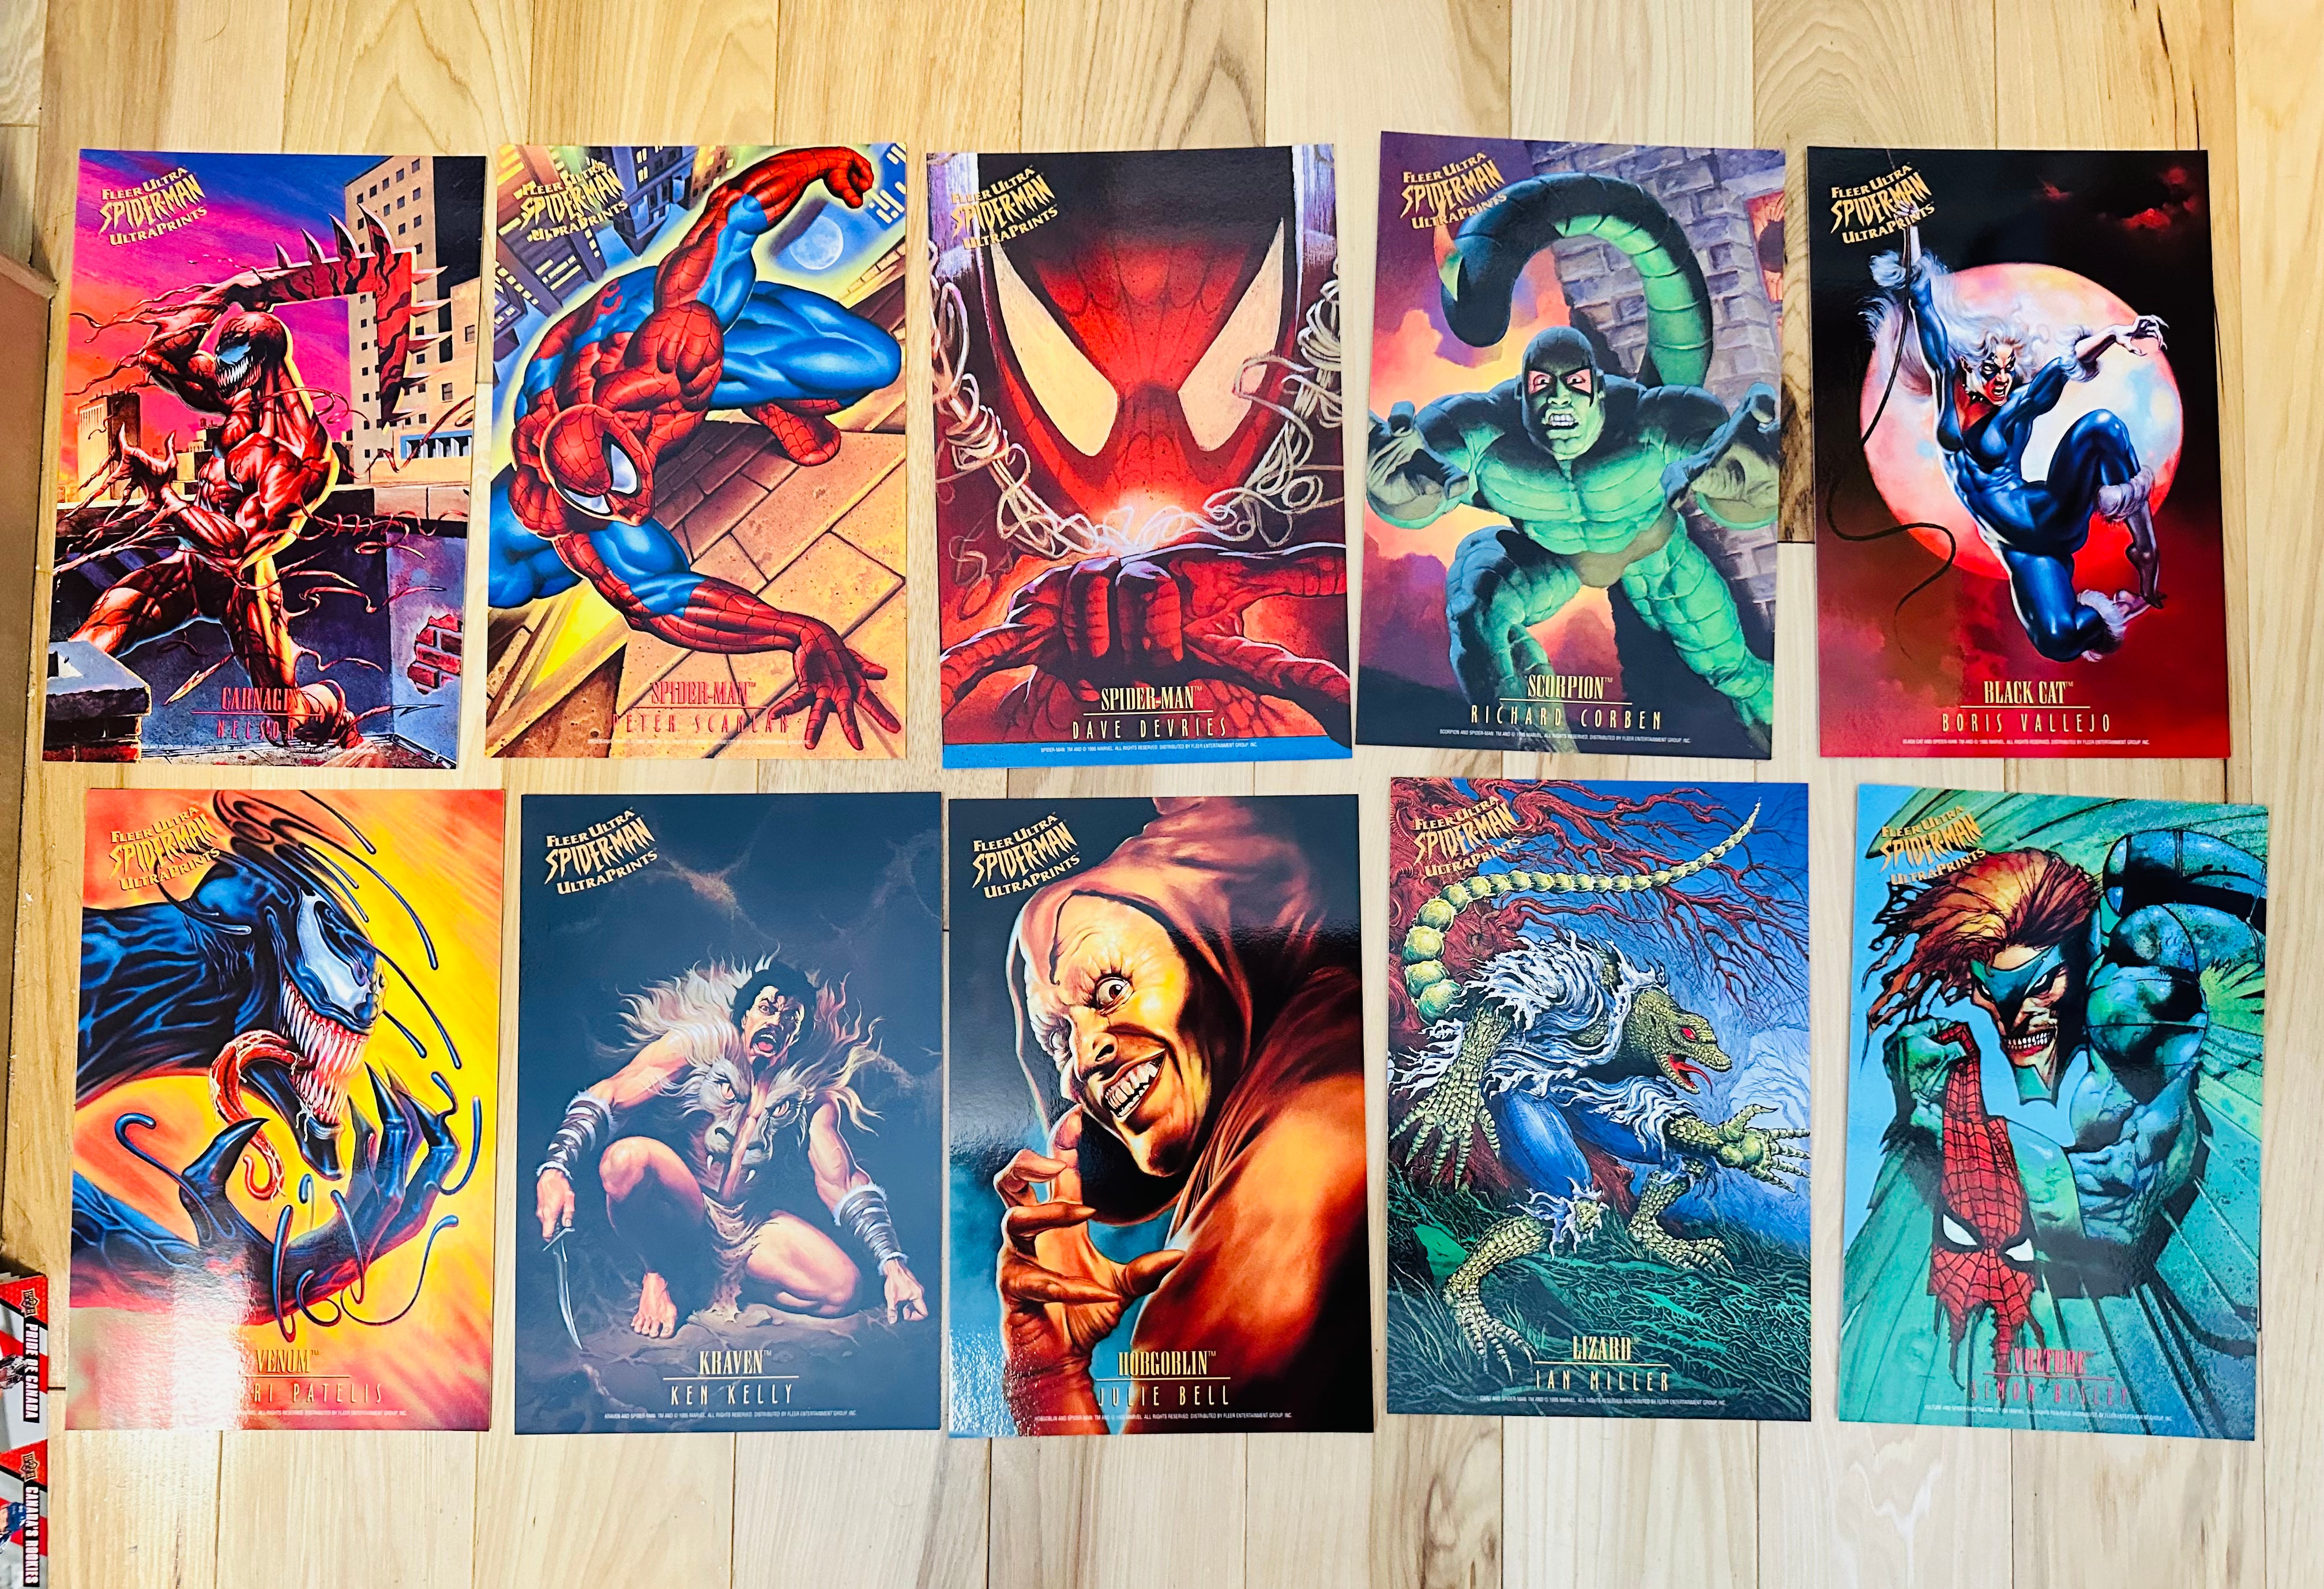 Spider-Man Fleer Ultra prints 6x10 size 10 cards set 1995